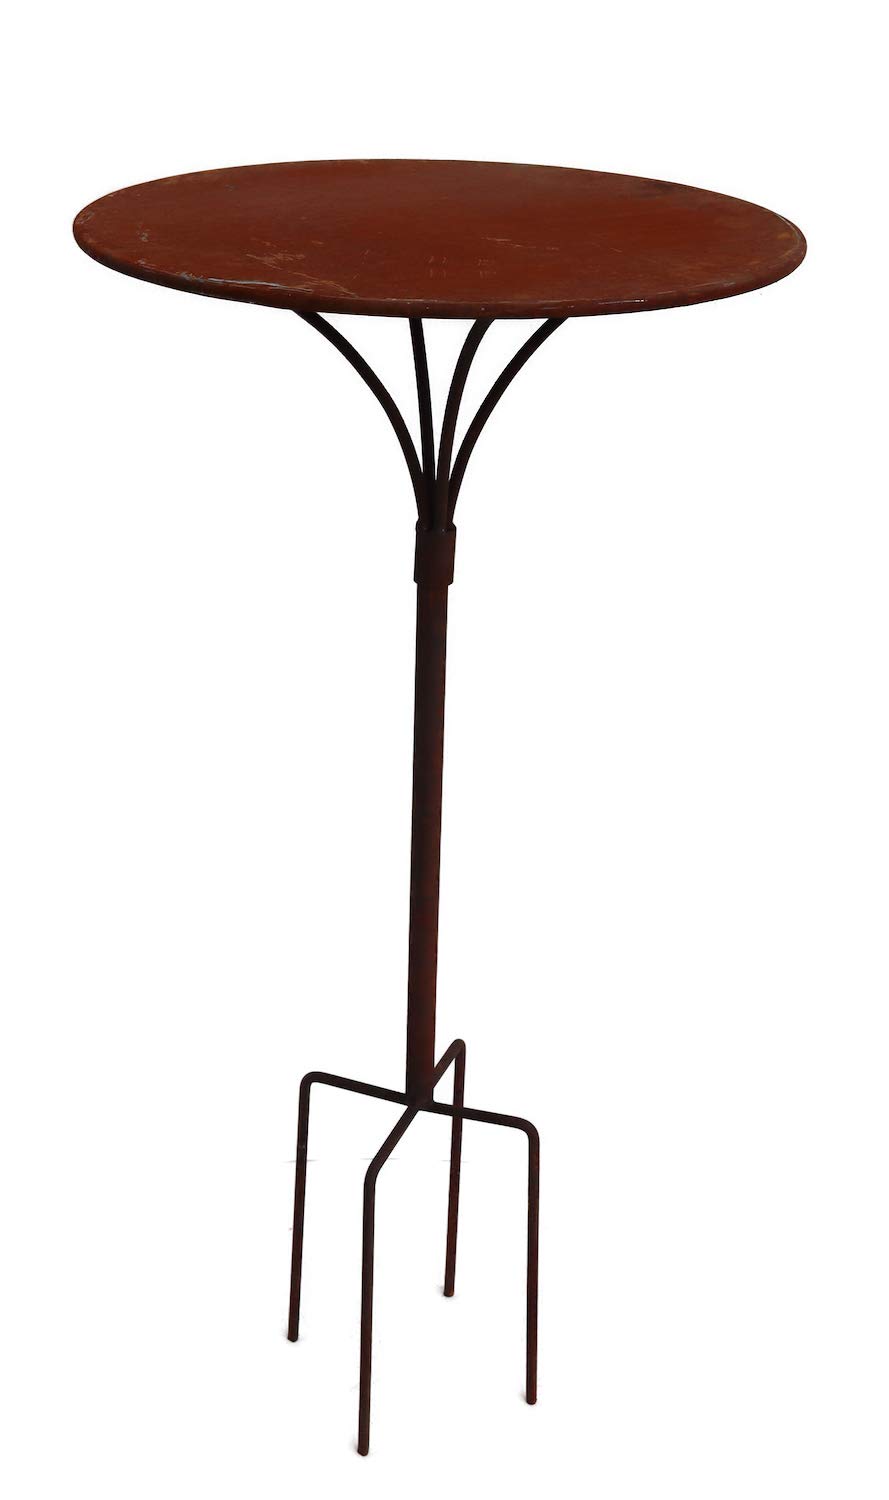 Hirsch Terracotta Gartenstecktisch stabil und massiv Deko Tisch aus Metall in Naturrost, Tisch Blumenhocker Beistelltisch (Ø:55cm Höhe:107cm)